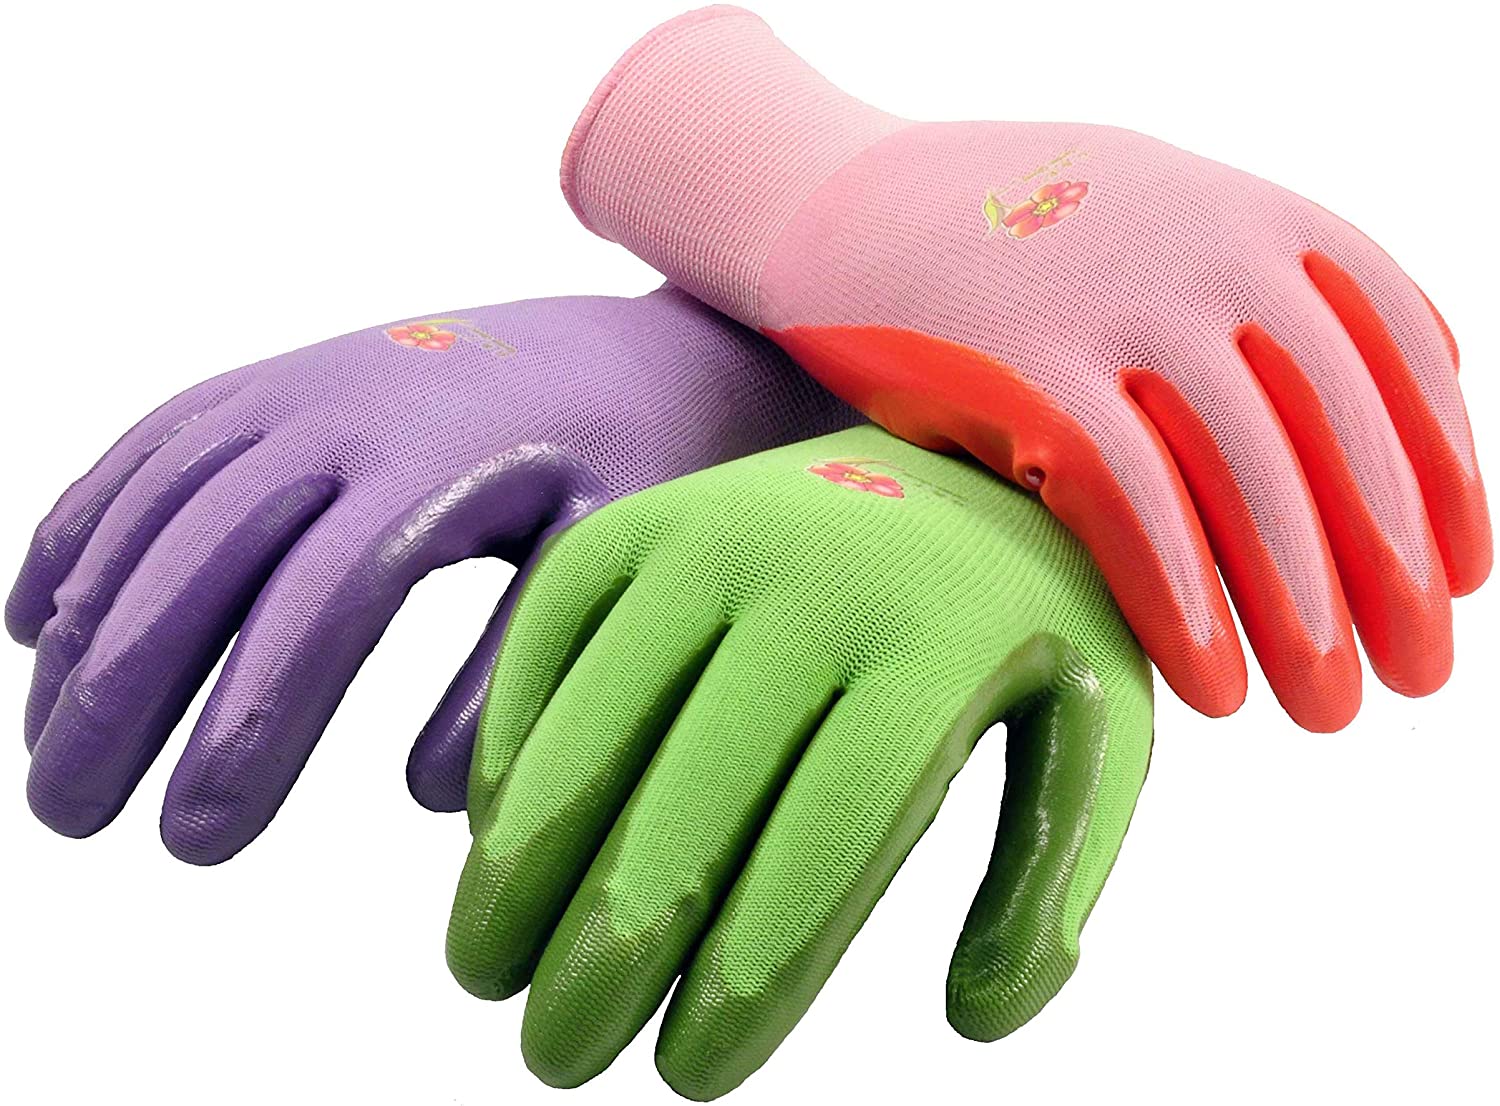 The Best Gardening Glove September 2021, Gloves For Gardening Uses